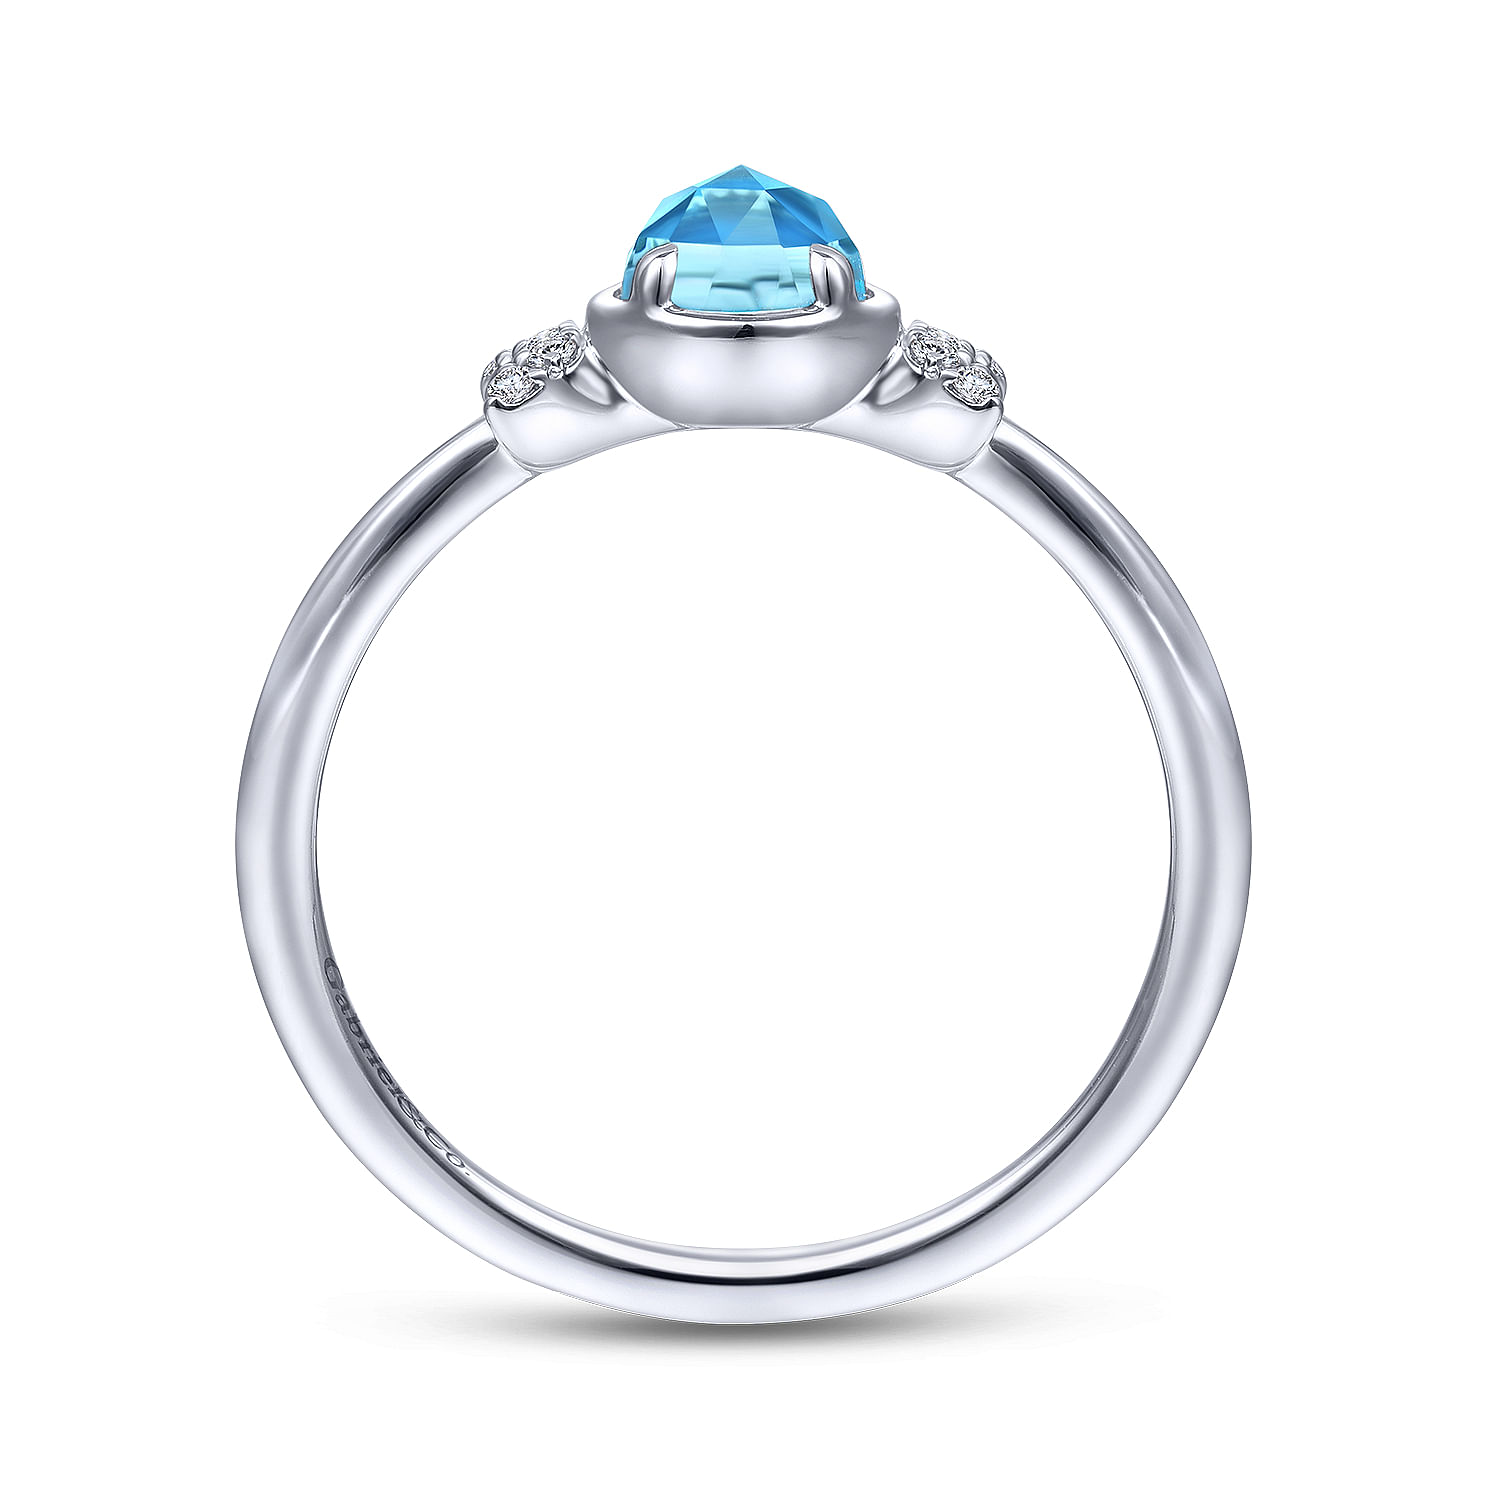 14K White Gold Floral Blue Topaz Diamond Ring